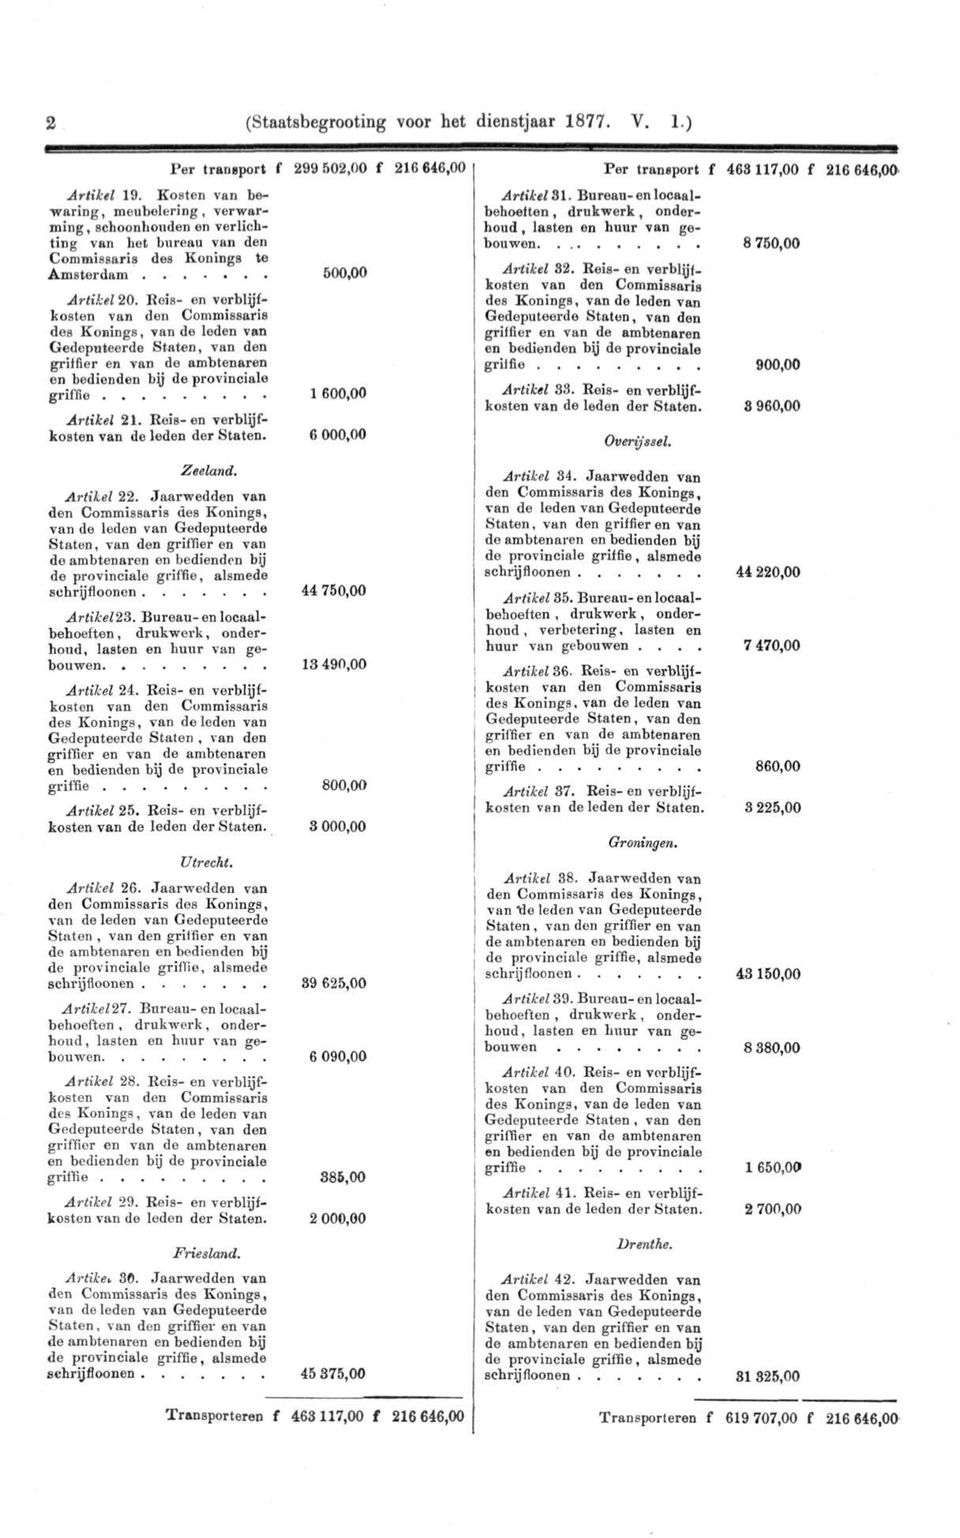 Rois- en vorblyfkosten Gedeputeerde Staten, van den en bedienden by de provinciale griffie Artikel 21. Reis-en verblijfkosten van de leden der Staten.